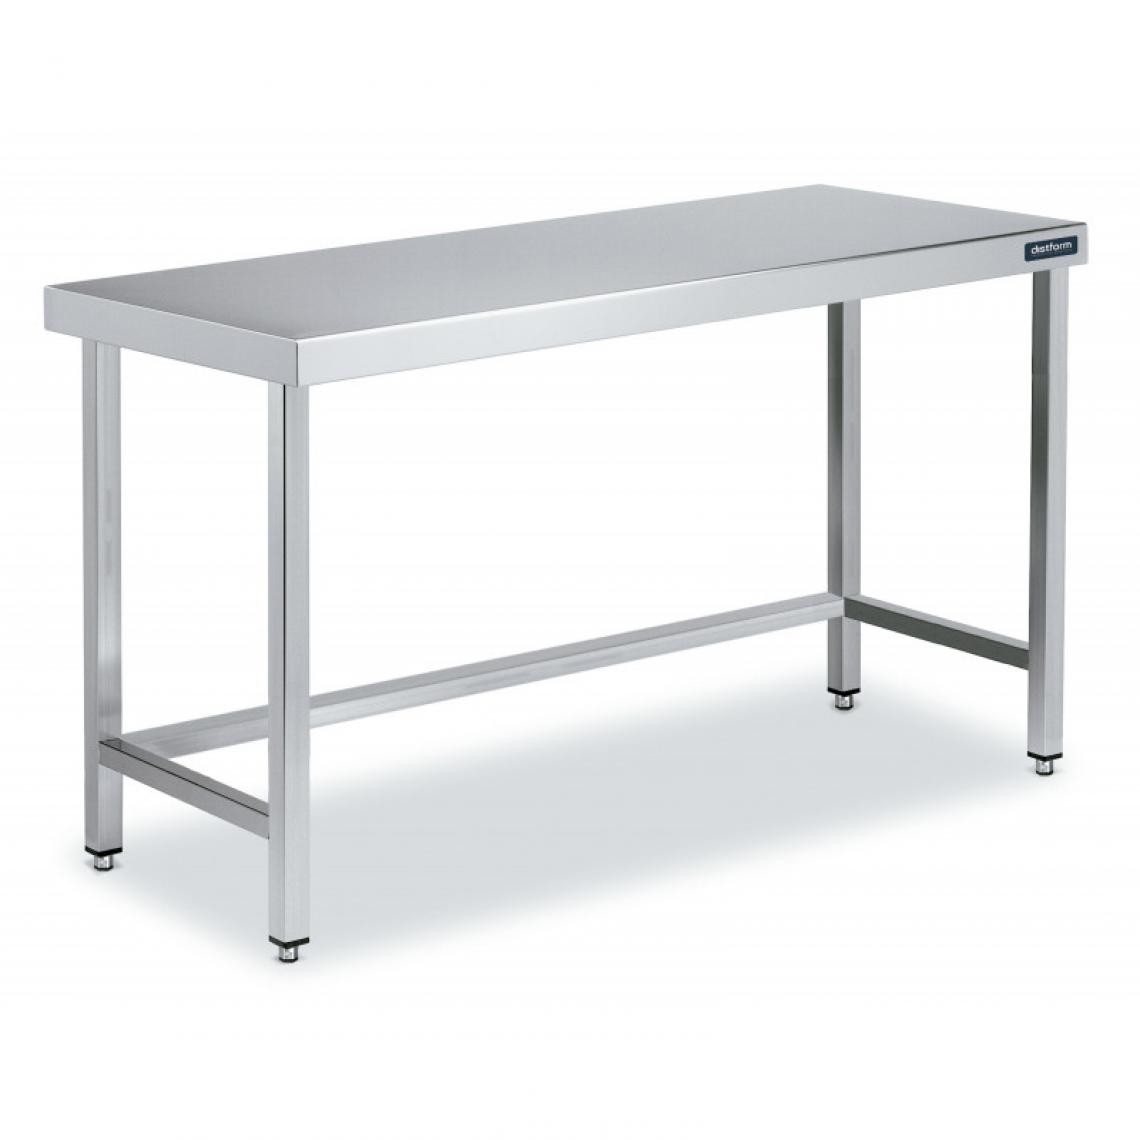 DISTFORM - Table Inox de Travail Centrale avec Renforts - Gamme 550 - Distform - Acier inoxydable600x550 - Tables à manger